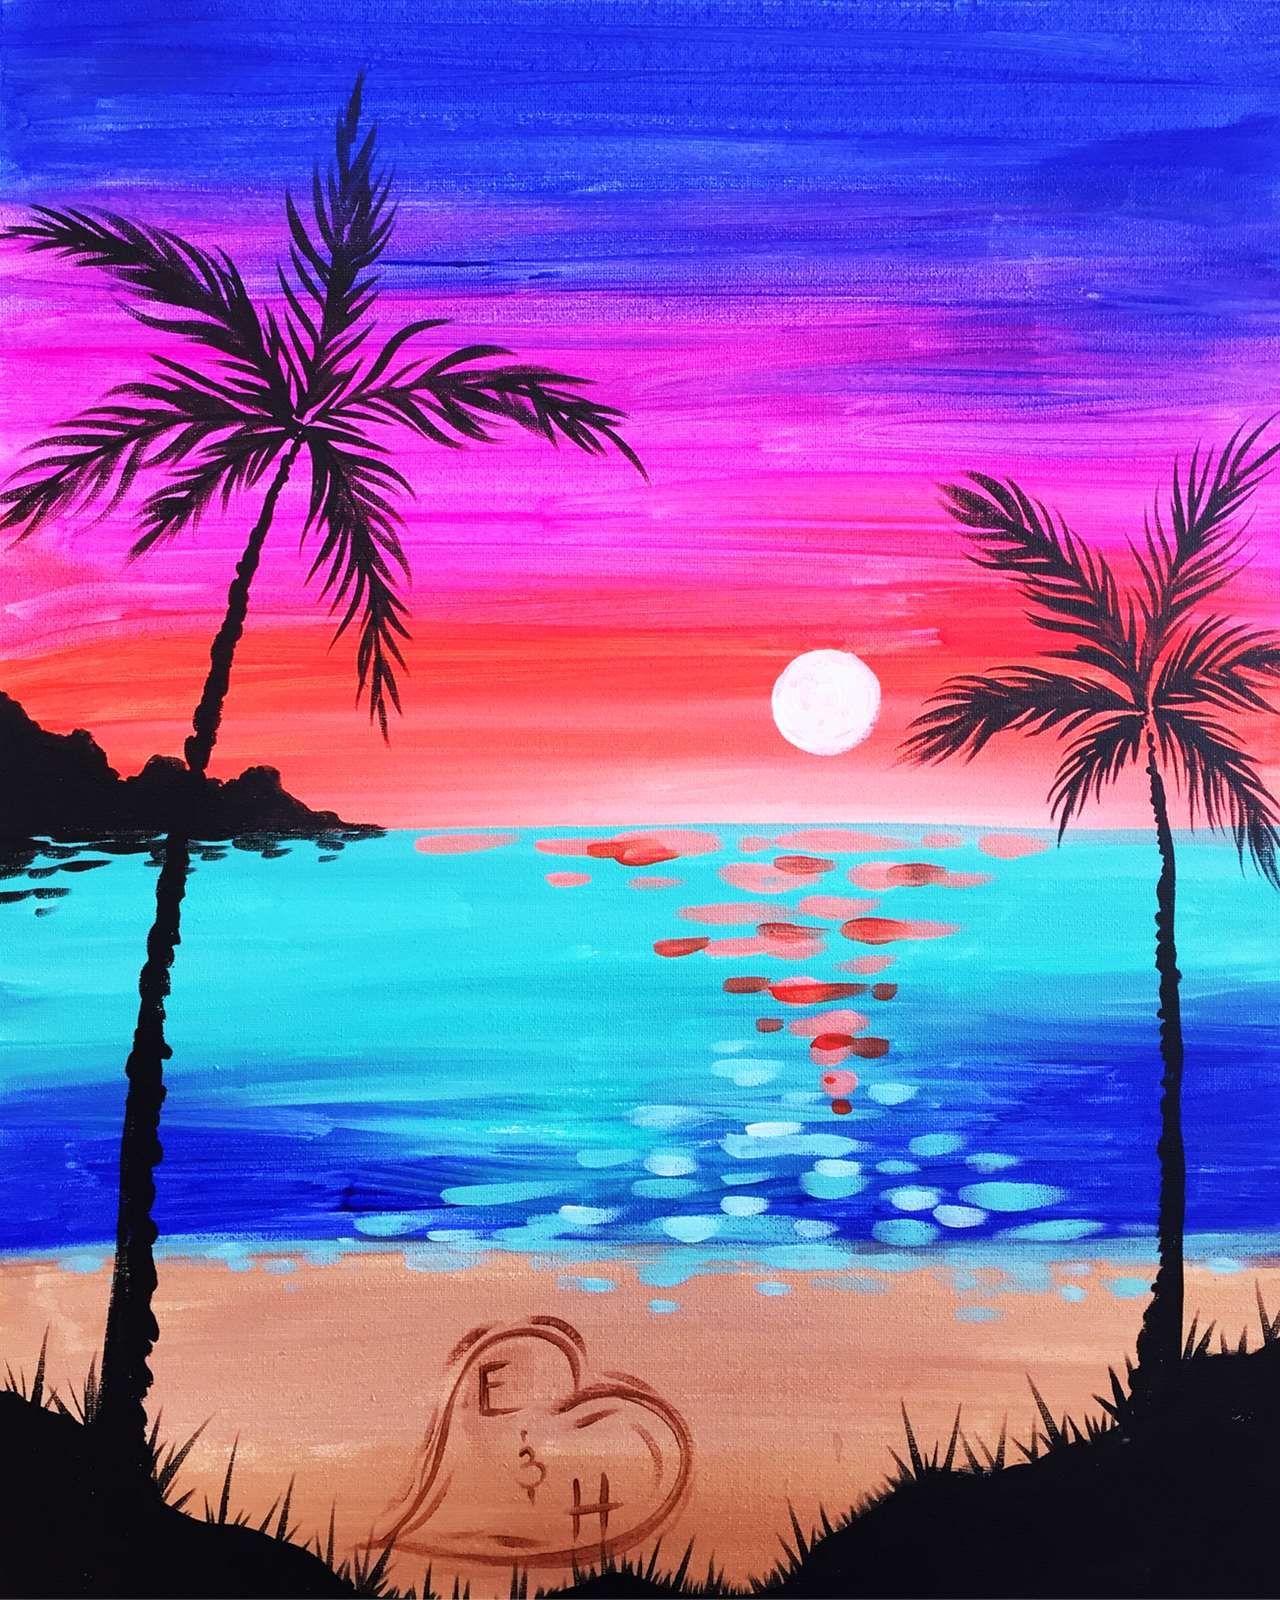 https://paintings.pinotspalette.com/summer-sunset-hdtv.jpg?v=10039362